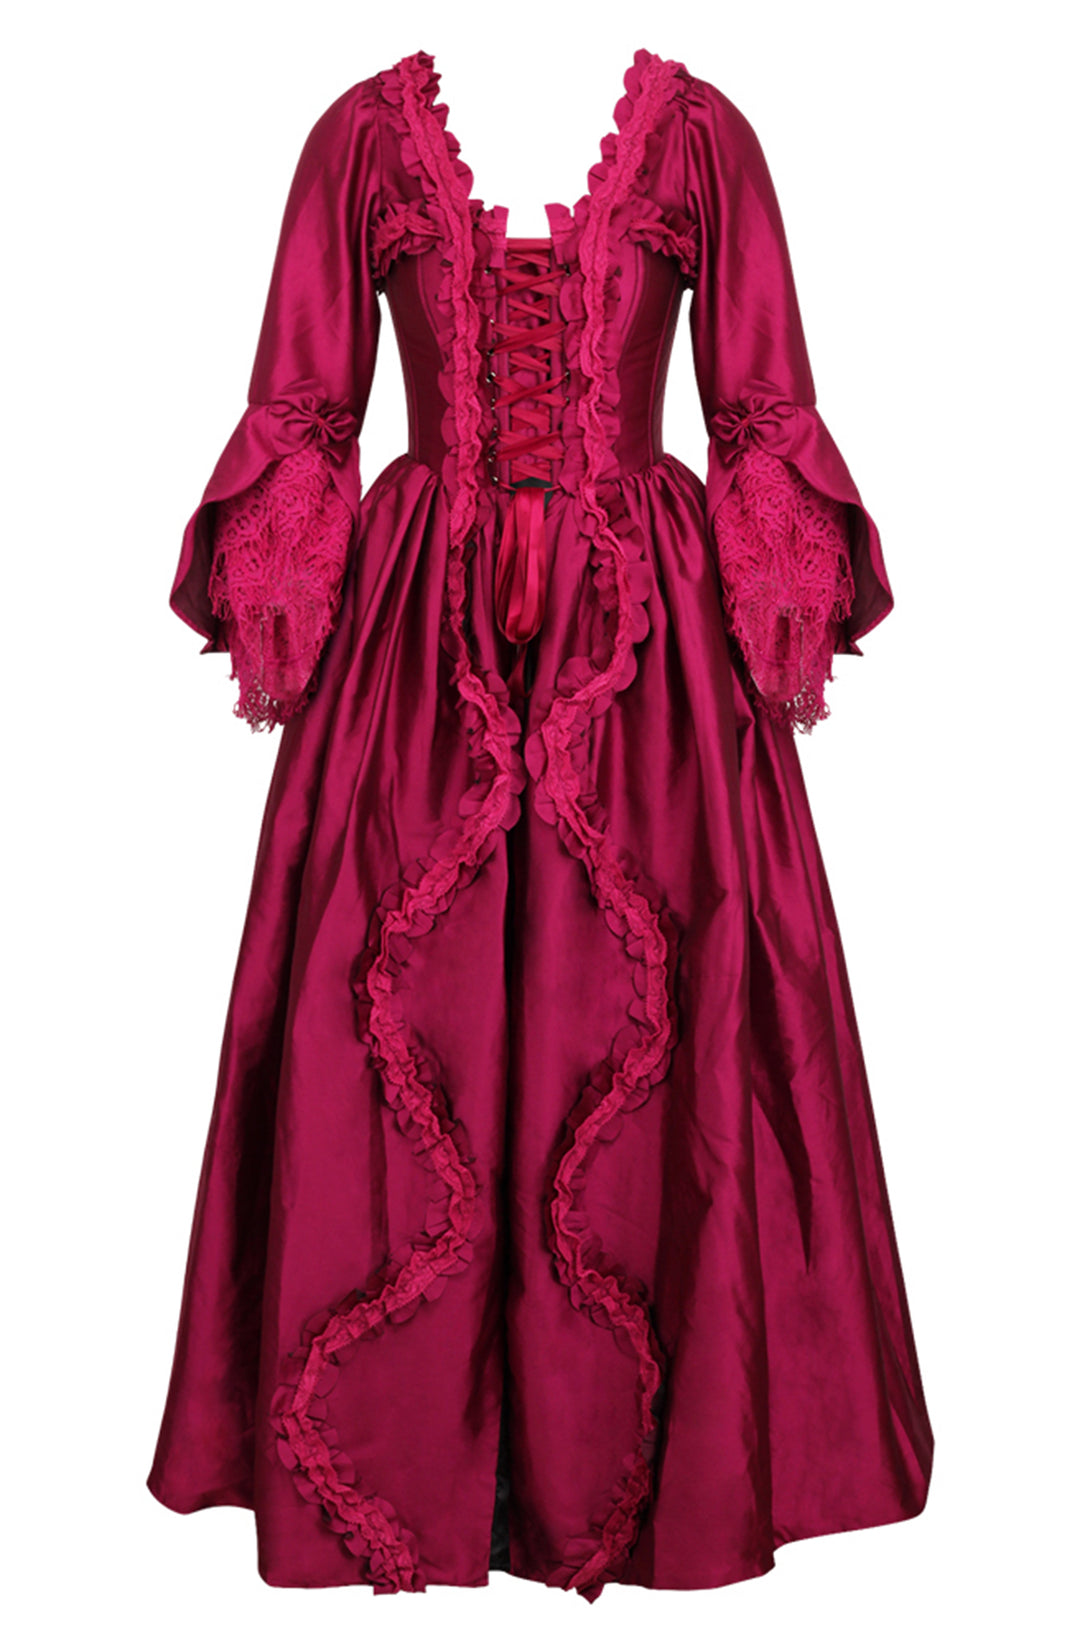 Renaissance Corset Gowns and Dresses